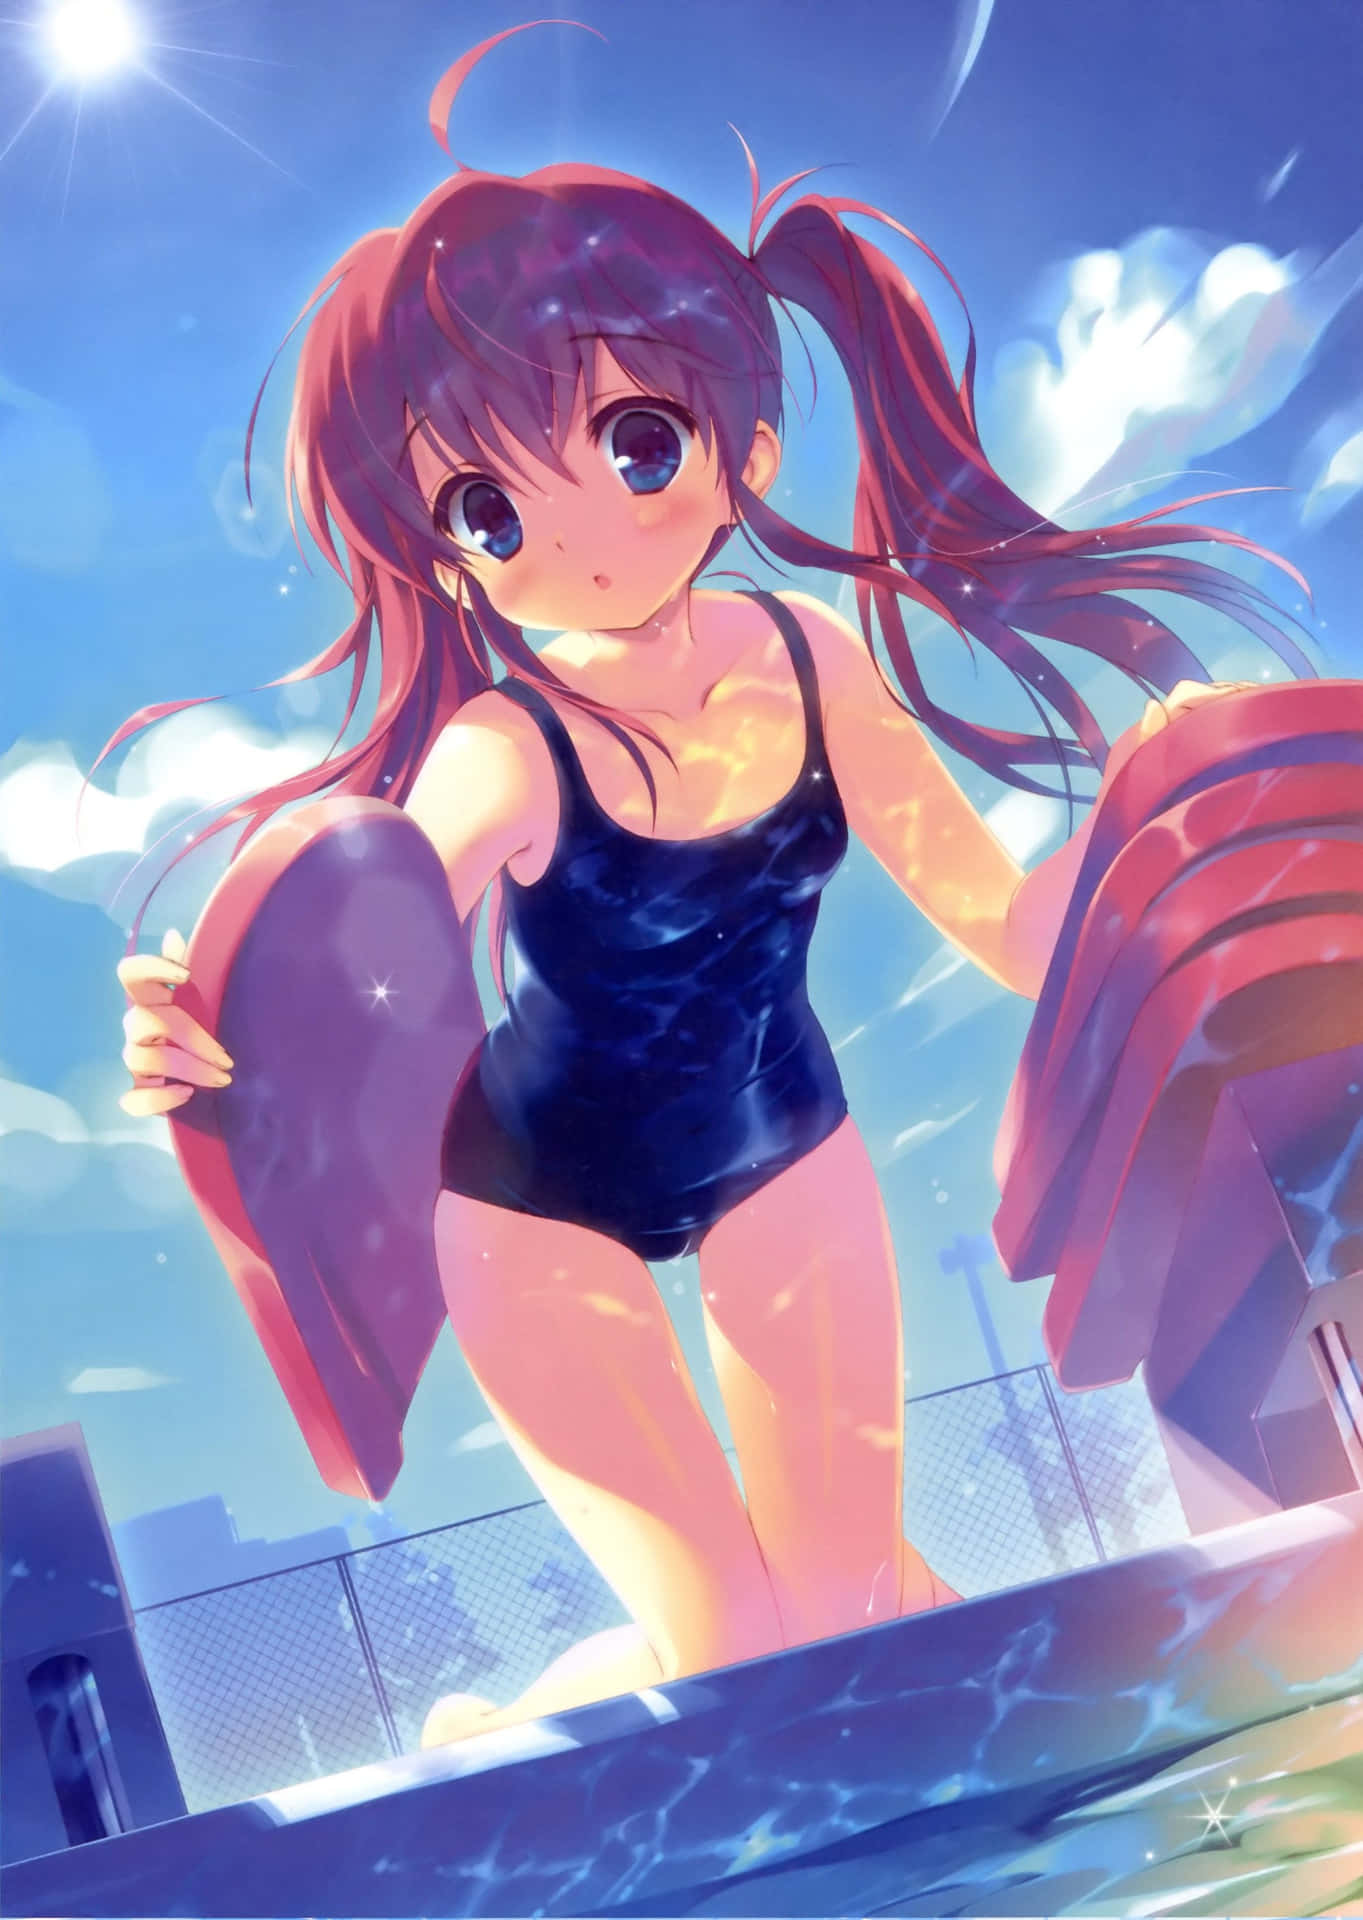 Sunny Poolside Anime Girl Wallpaper